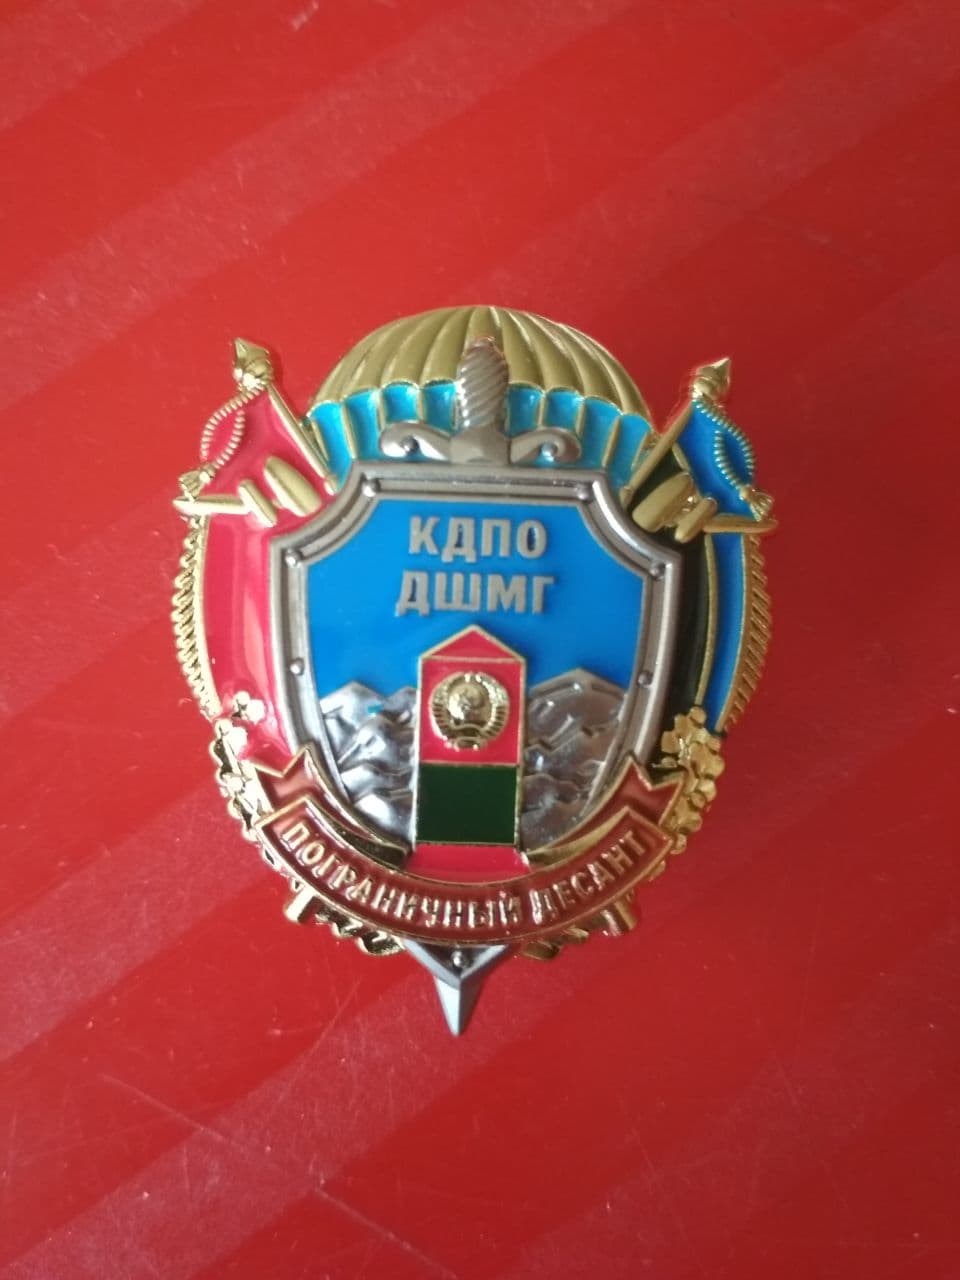 Памятный знак "Пограничный десант. КДПО ДШМГ"